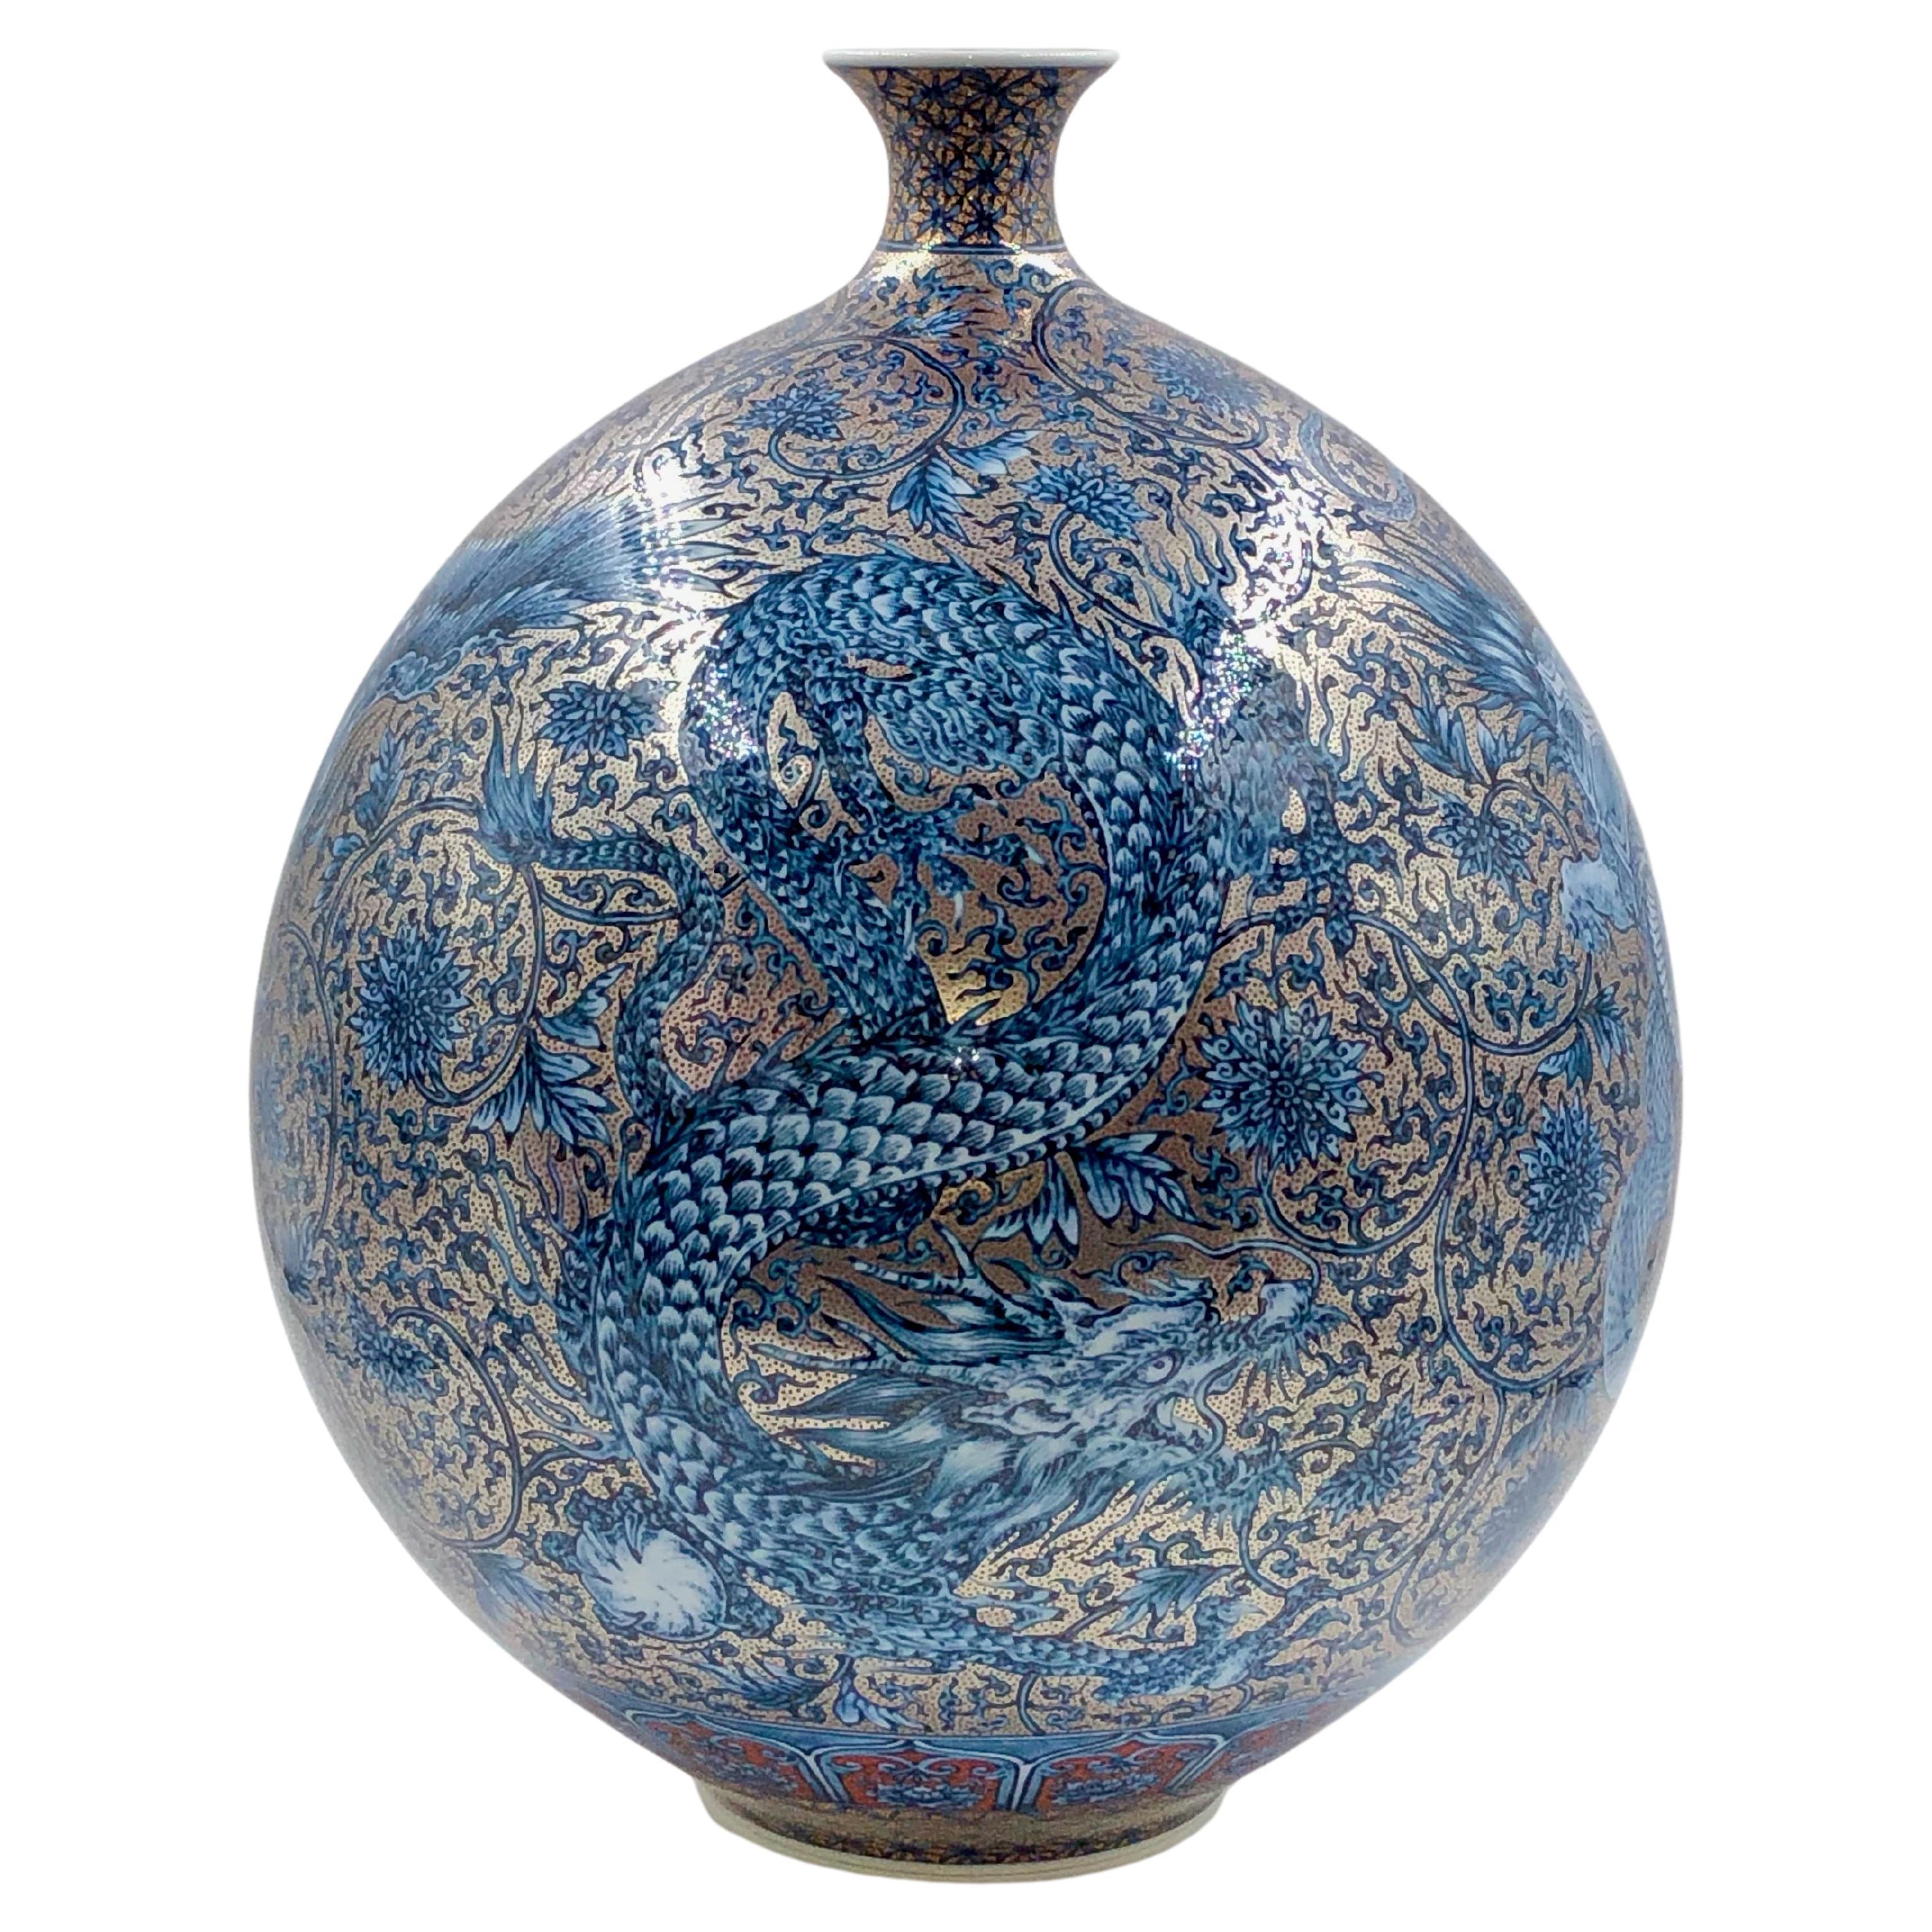 Extraordinaire vase en porcelaine japonaise contemporaine de qualité musée, extrêmement détaillé et peint à la main de façon très complexe, en bleu, rouge et platine, représentant les quatre créatures de bon augure de la mythologie chinoise,